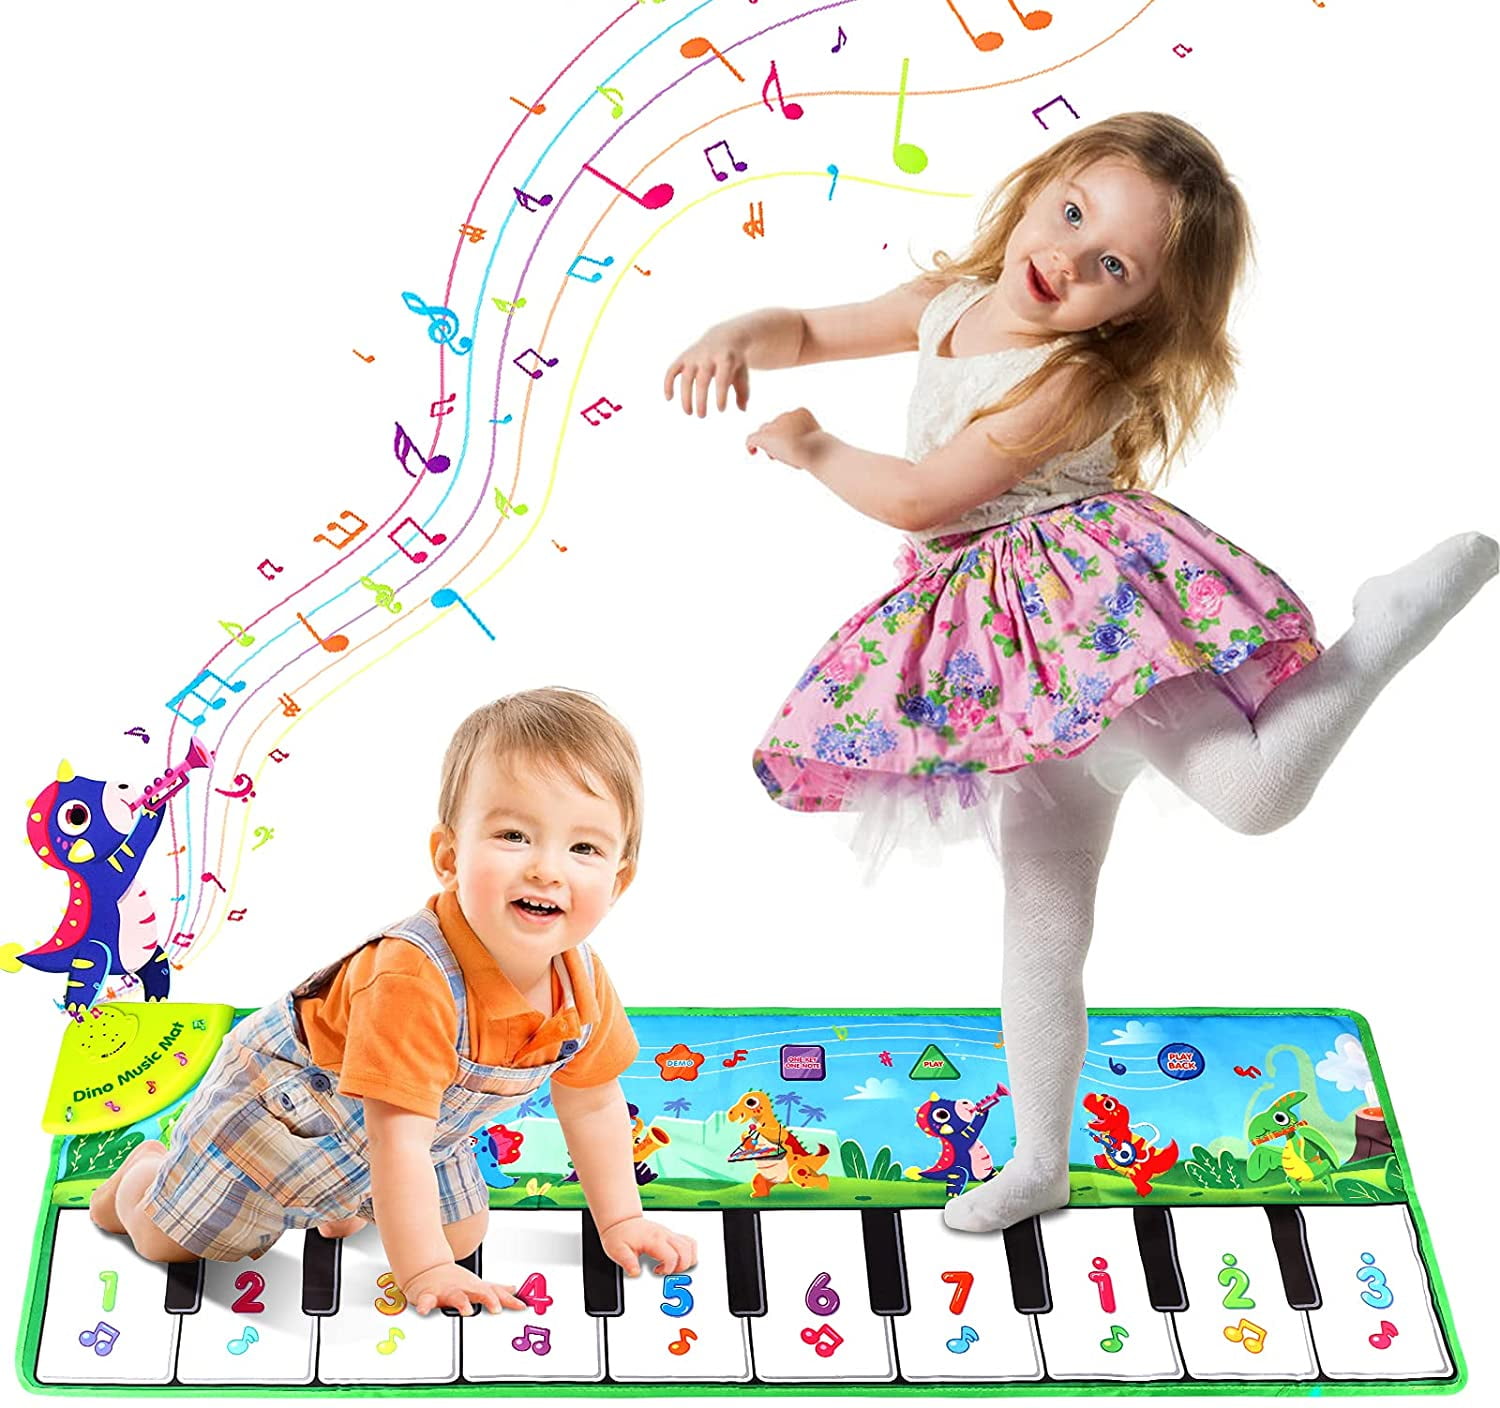 RenFox Tapis Musical, Tapis de Jeu Piano Enfants, Tapis de Musique avec des  7 Sons d'Animaux, Tapis de Danse pour Enfants, Cadeau Jouets pour